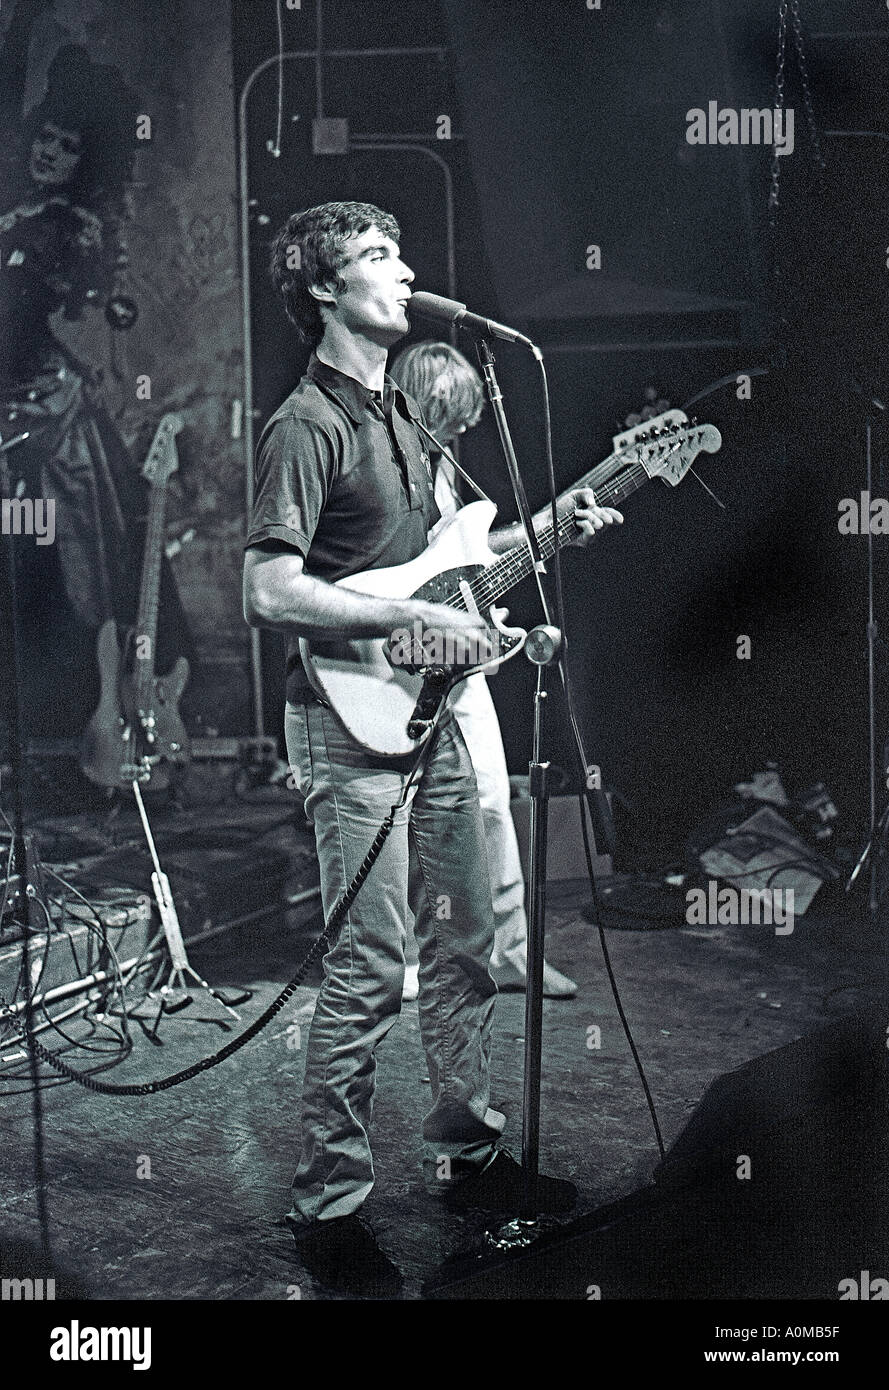 New Wave Music, New York, NY, USA 'The Talking Heads' Rock Band spielt im Nightclub von CBGB, David Byrne, Rock Singer Rock'n'Roll, Musik machen, Stockfoto